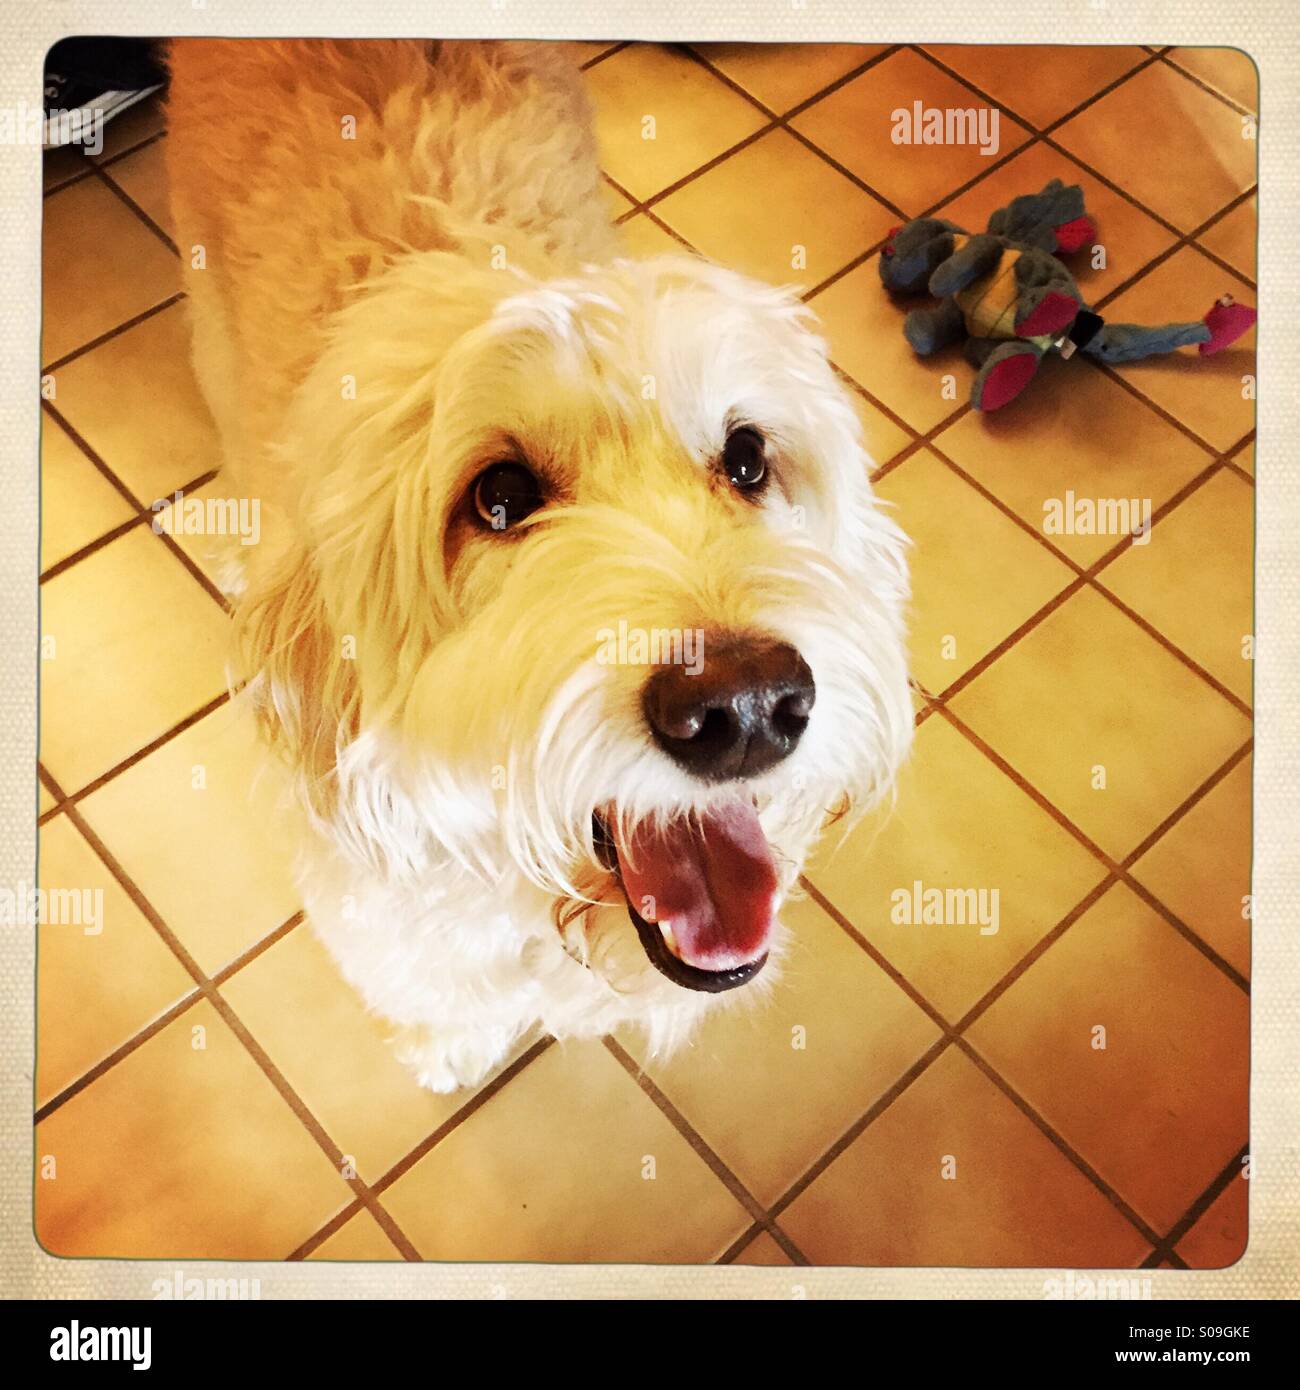 A happy goldendoddle dog. Stock Photo